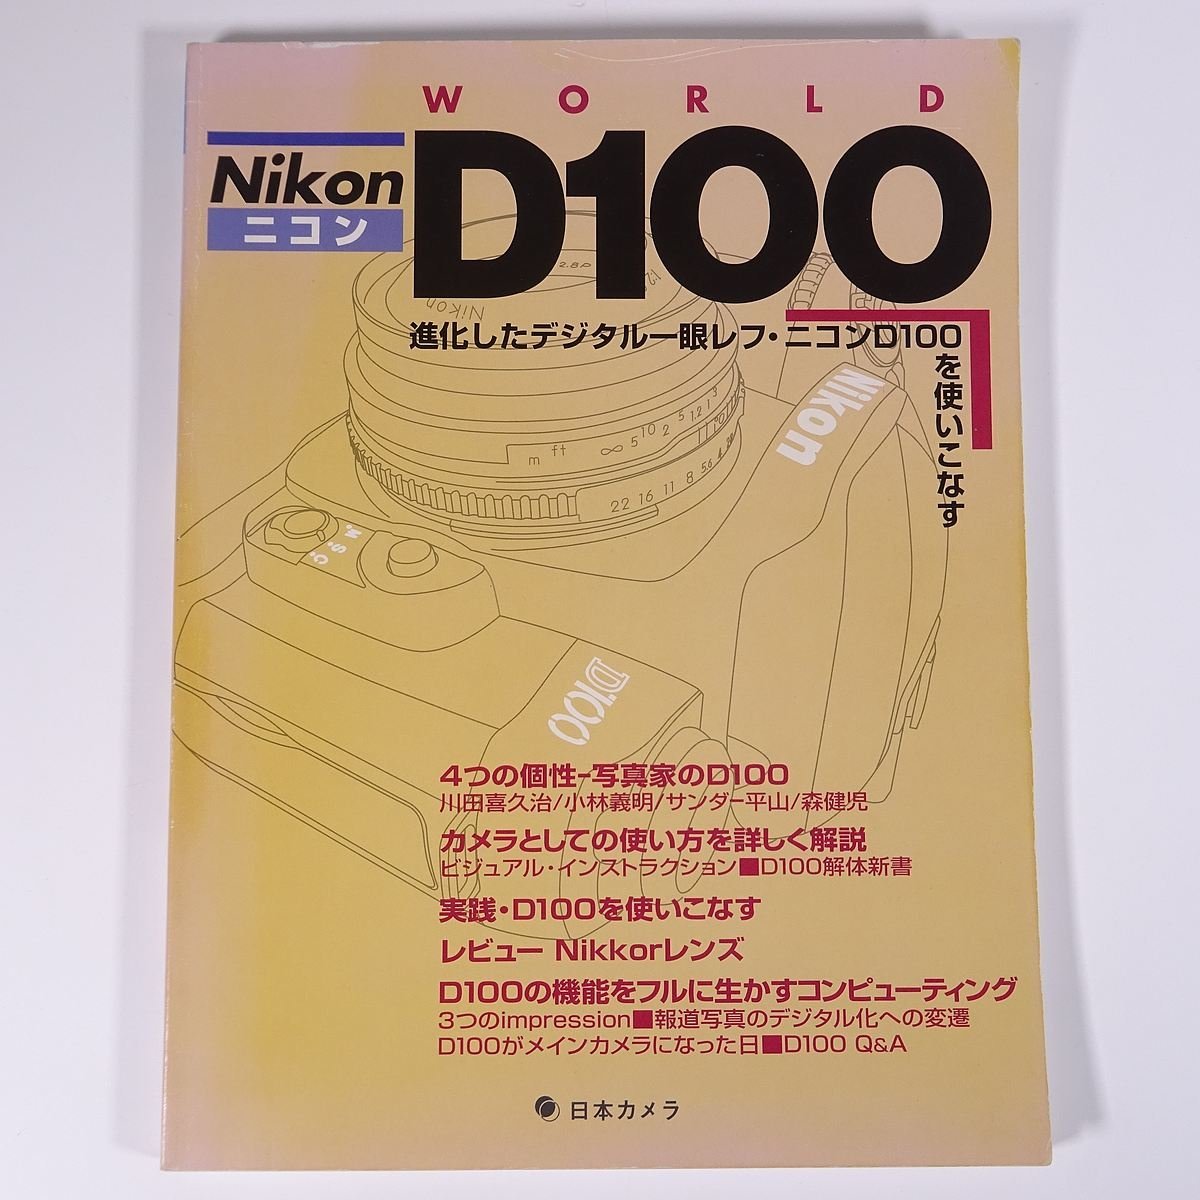 2022年のクリスマスの特別な衣装 欲しいの Nikon ニコン D100 WORLD D100を使いこなす一冊 日本カメラ 2002 大型本 カメラ 写真 撮影 デジタル一眼レフ littletheatreonline.com littletheatreonline.com